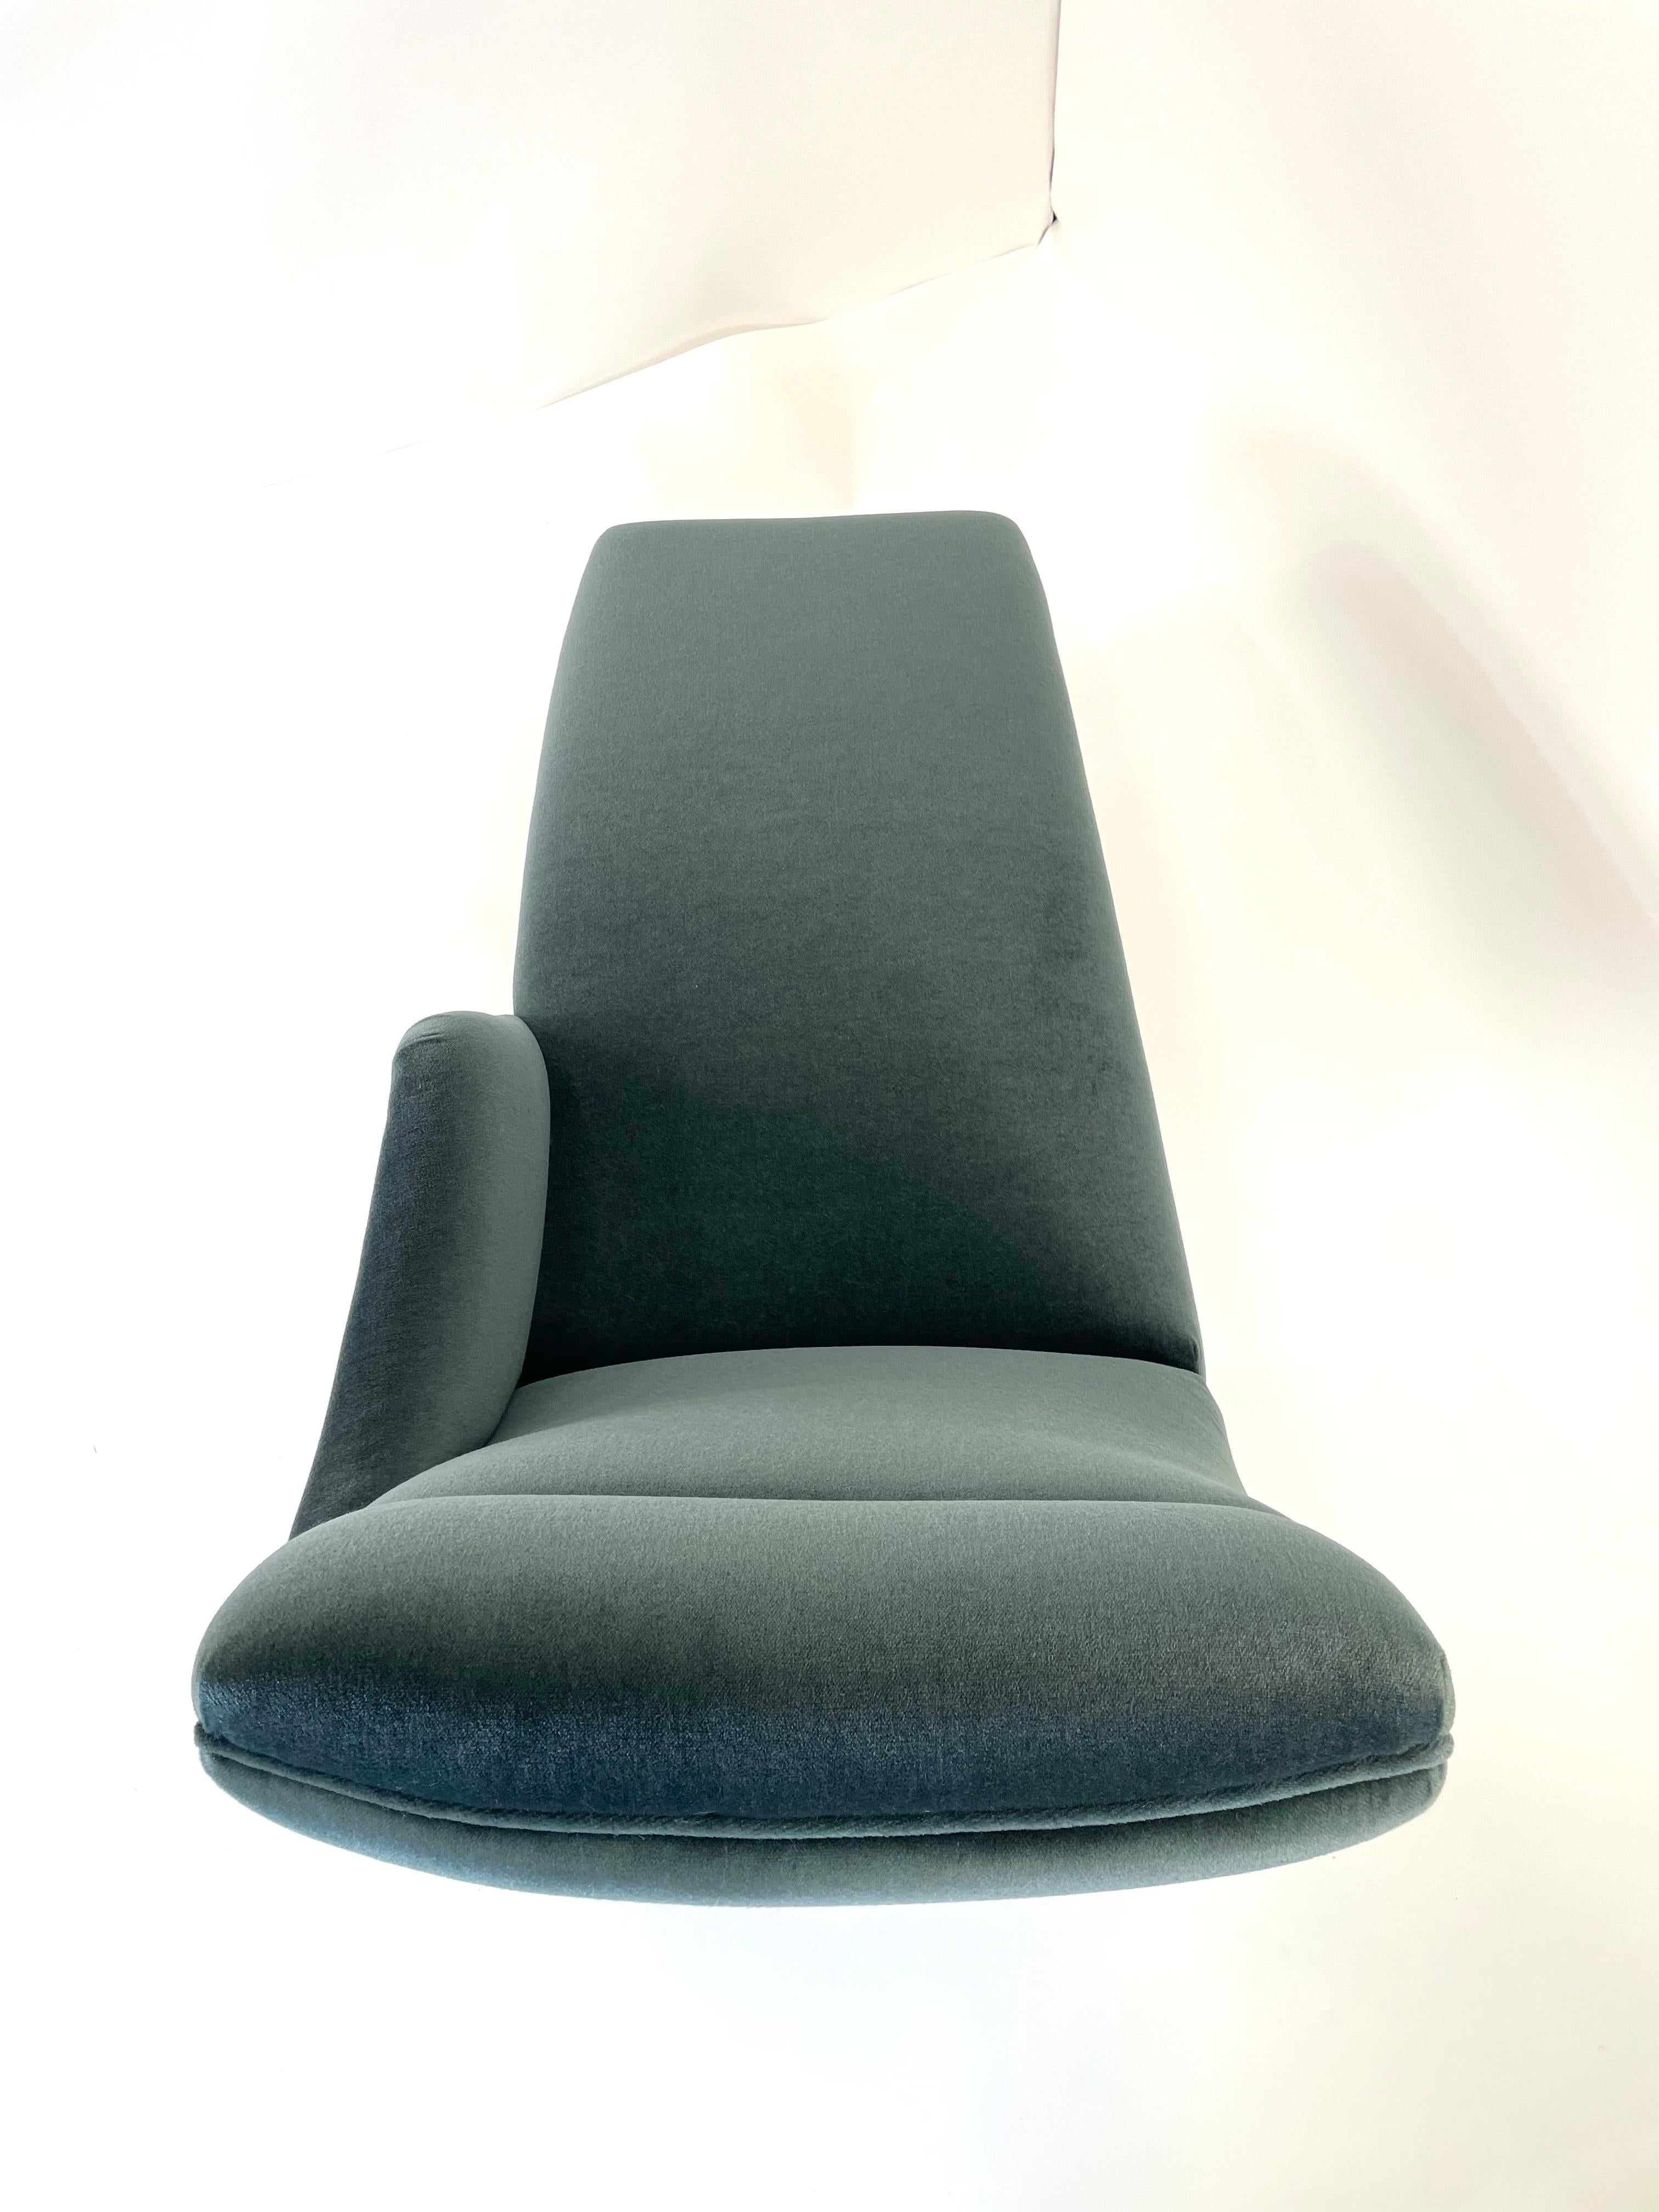 La chaise Erica a été conçue pour la première fois en 1969 et nommée d'après l'épouse de Vladimir Kagan, Erica Wilson, une passionnée de travaux d'aiguille. Redessinée en reprenant les lignes épurées et l'aspect classique du prototype que Feal